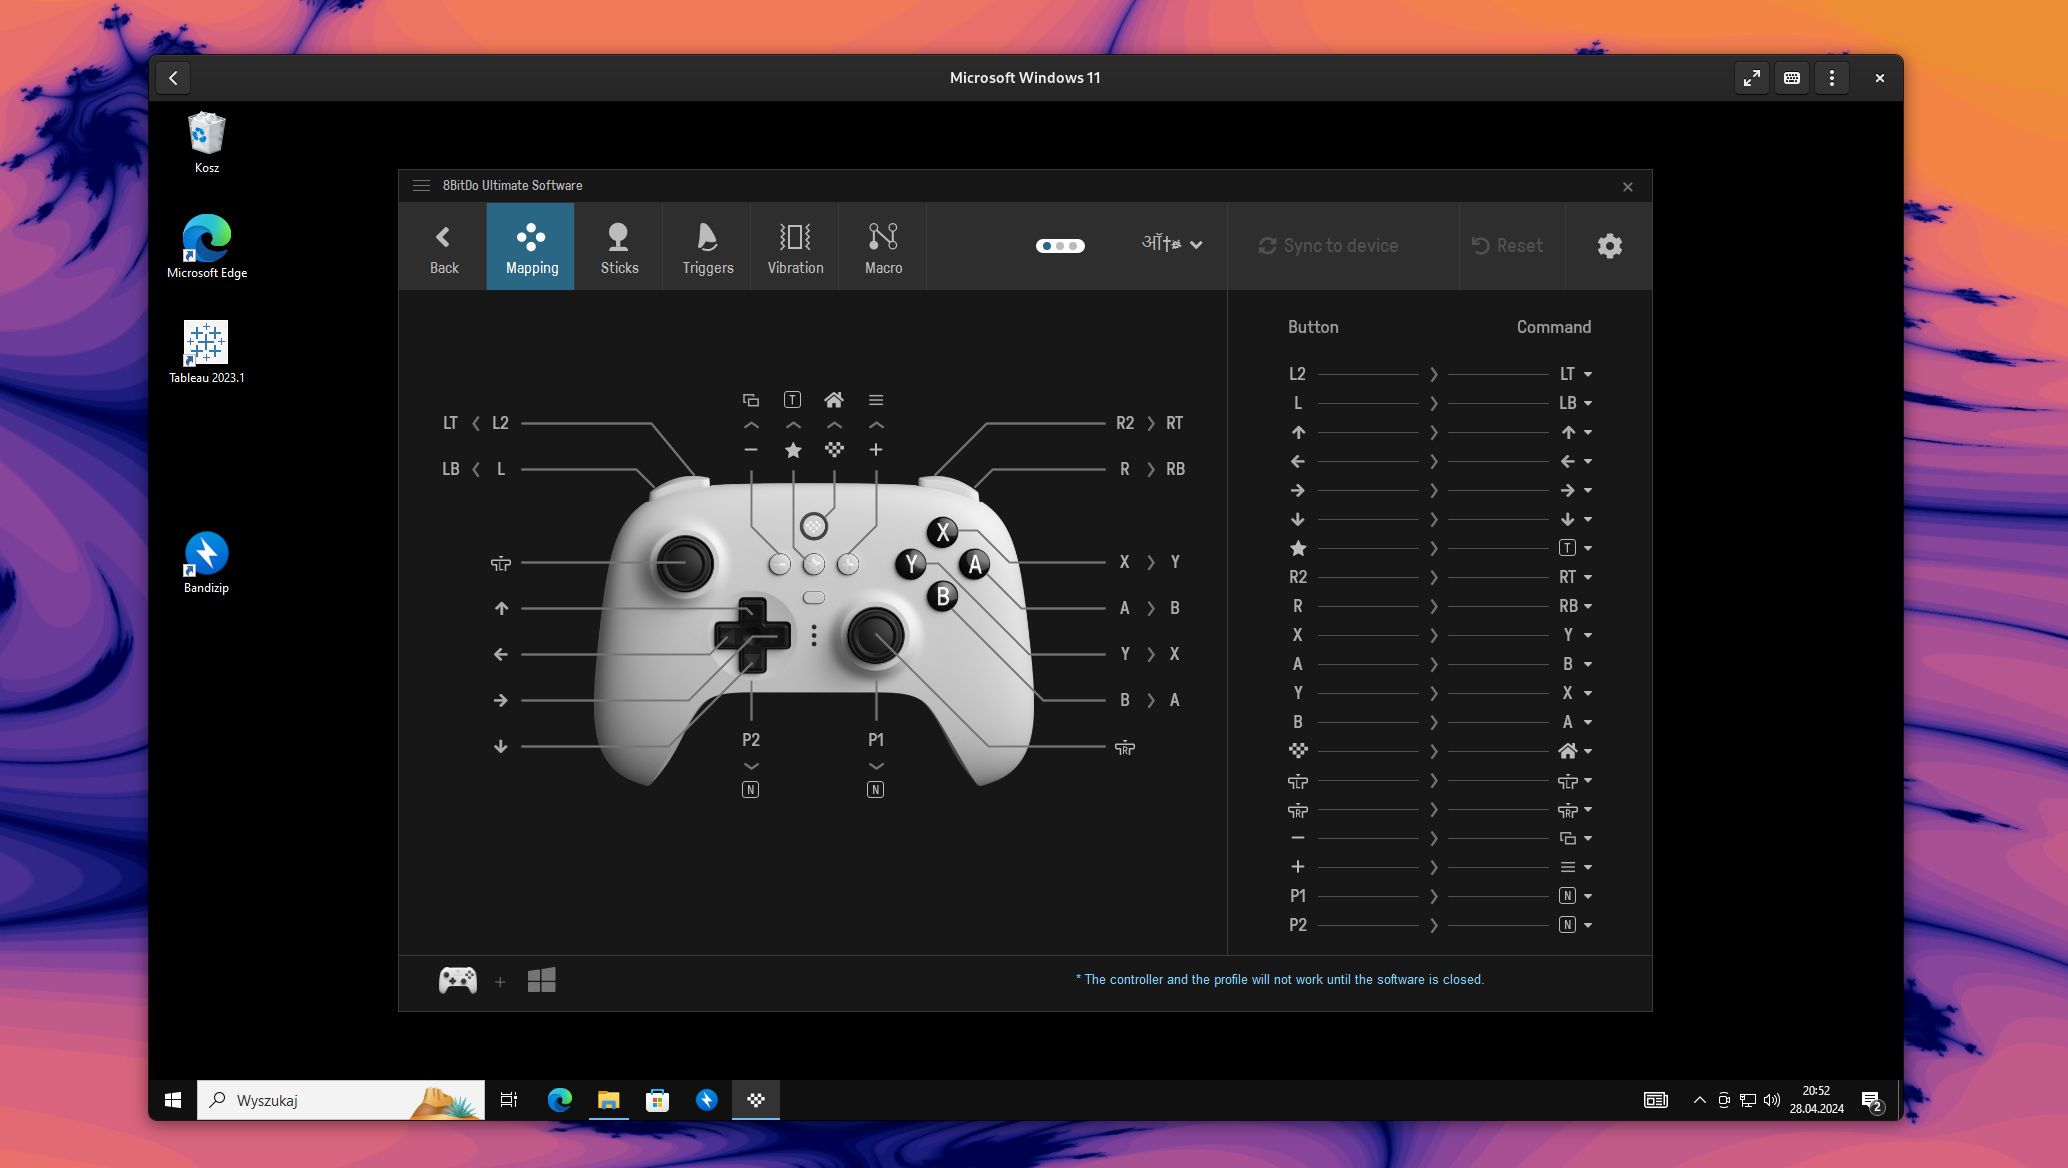 Maszyna wirtualna z Windowsem 11 uruchomiona za pomocą GNOME Boxes z włączoną aplikacją Ultimate Software